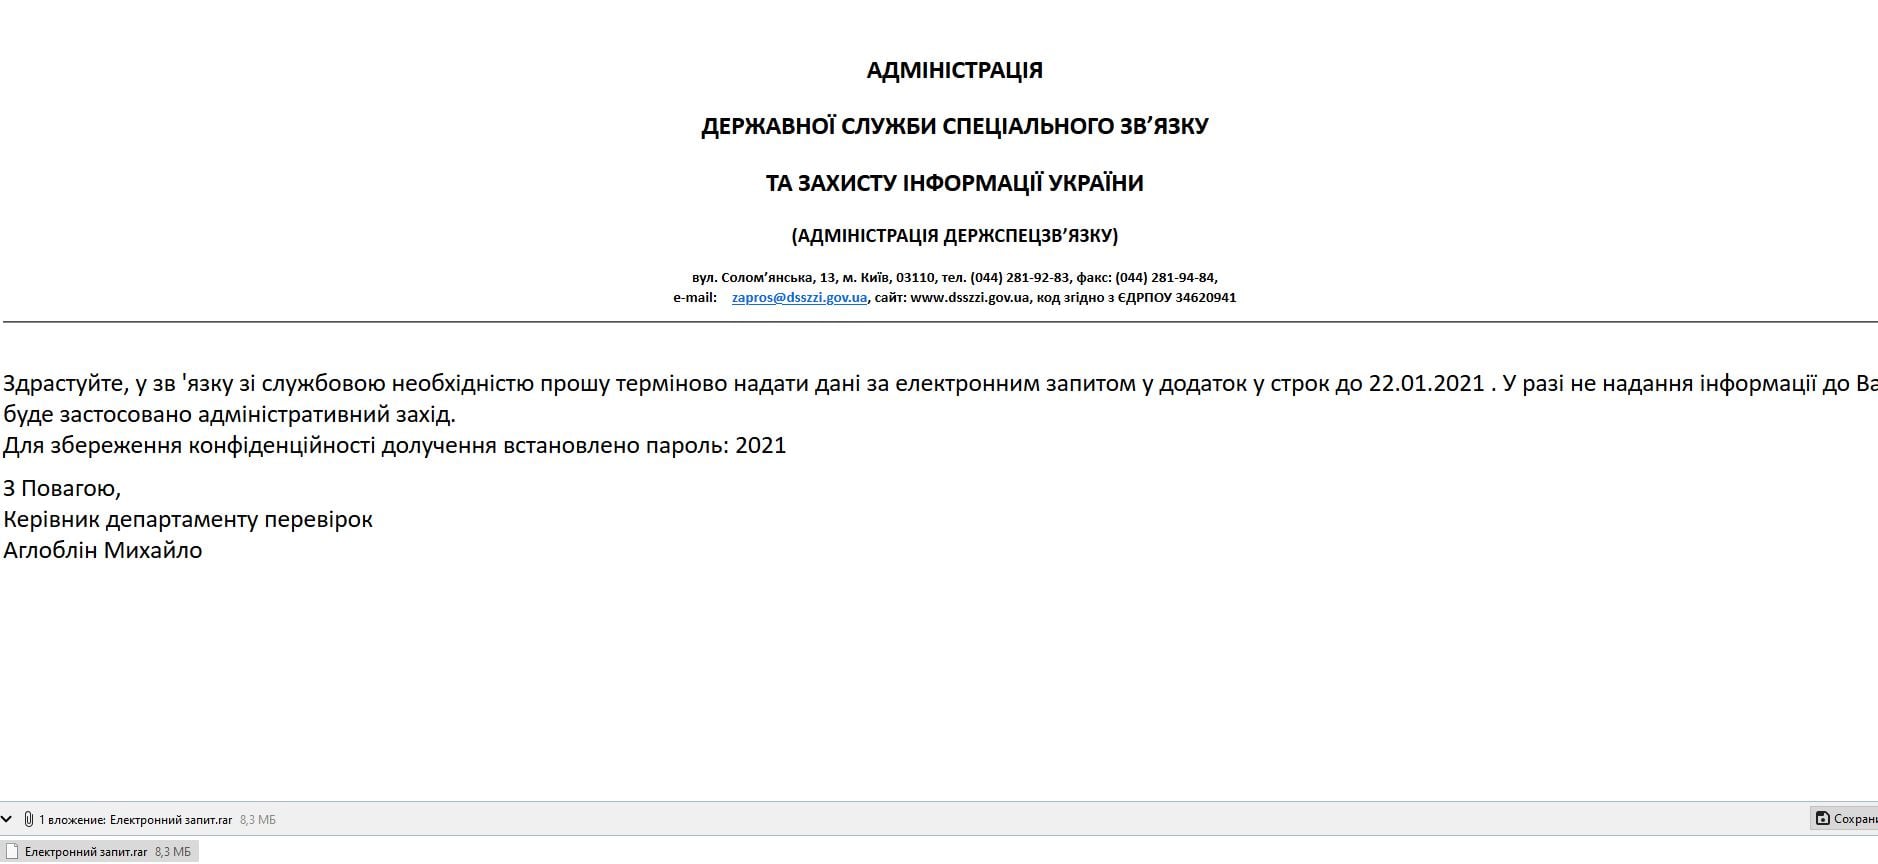 Російські хакери знову розсилають фішингові листи державним установам України